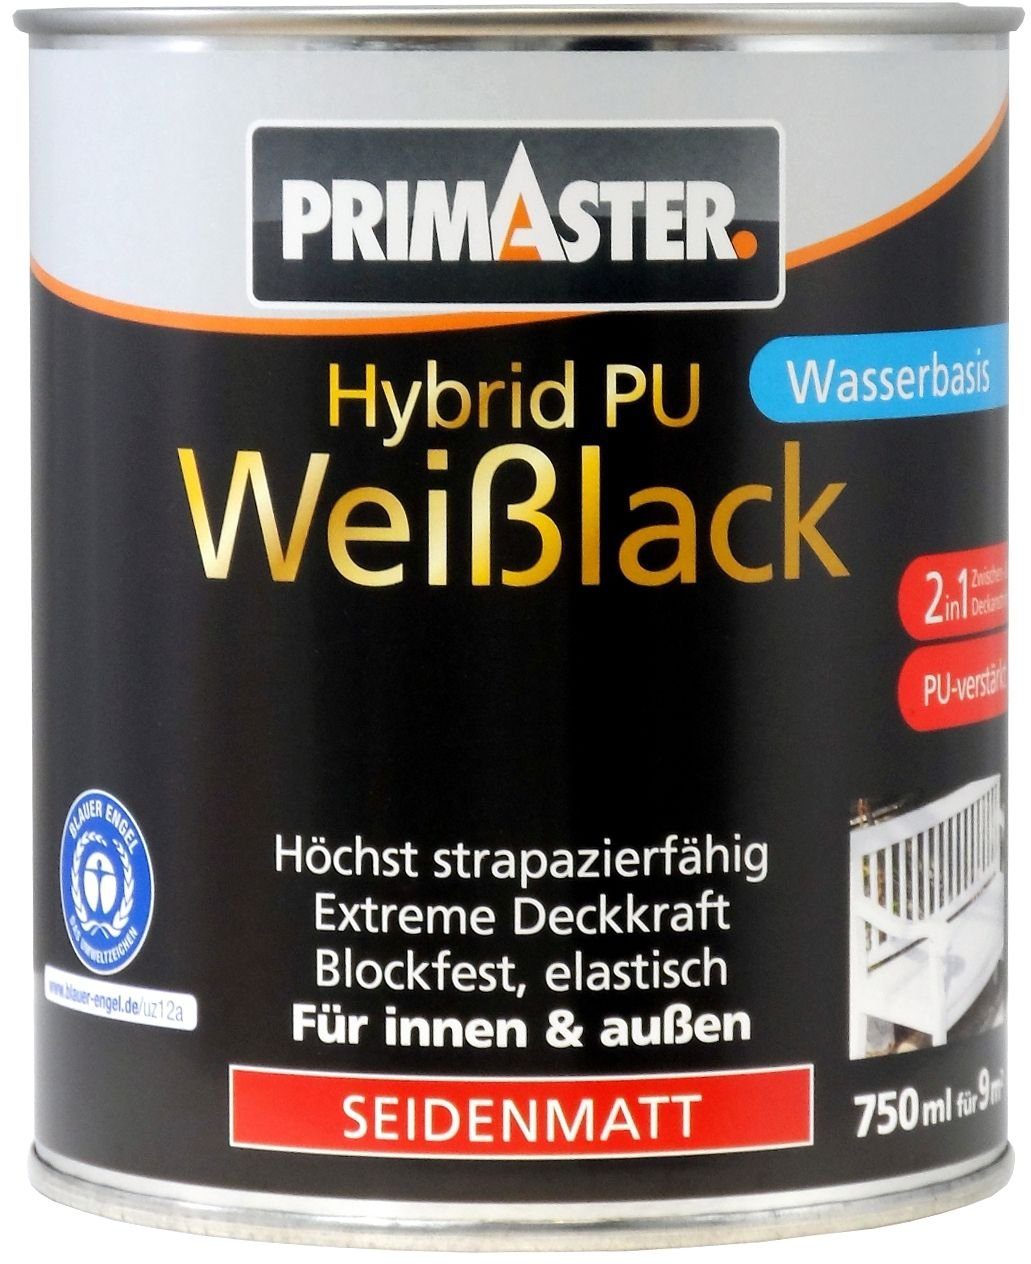 Hybrid-PU-Weißlack seidenmatt Primaster Primaster 750 Weißlack ml